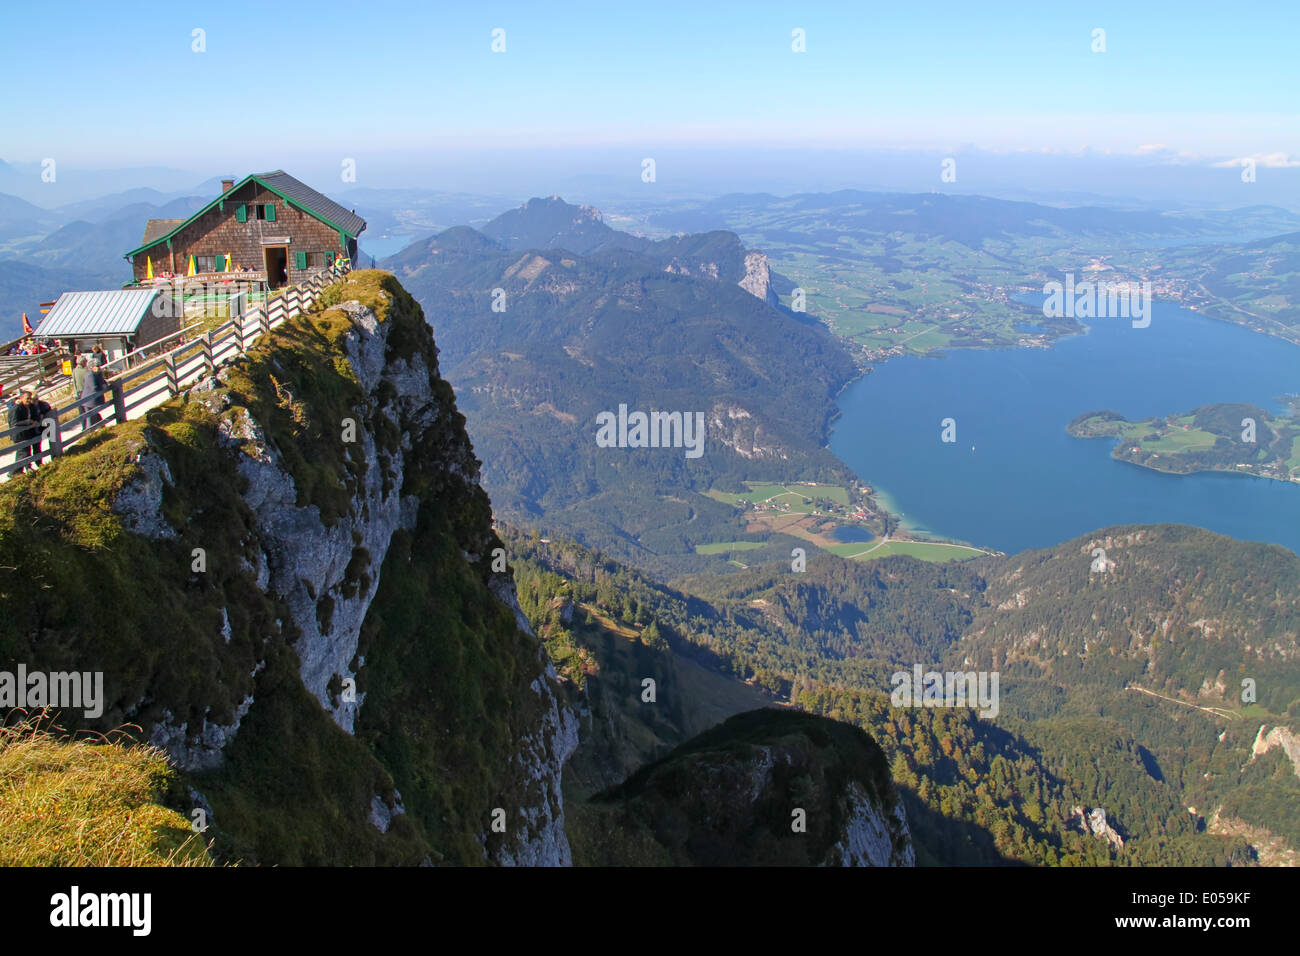 Austria, look of the mountain Schaf, lunar lake, oesterreich, Blick vom Schafberg, Mondsee Stock Photo